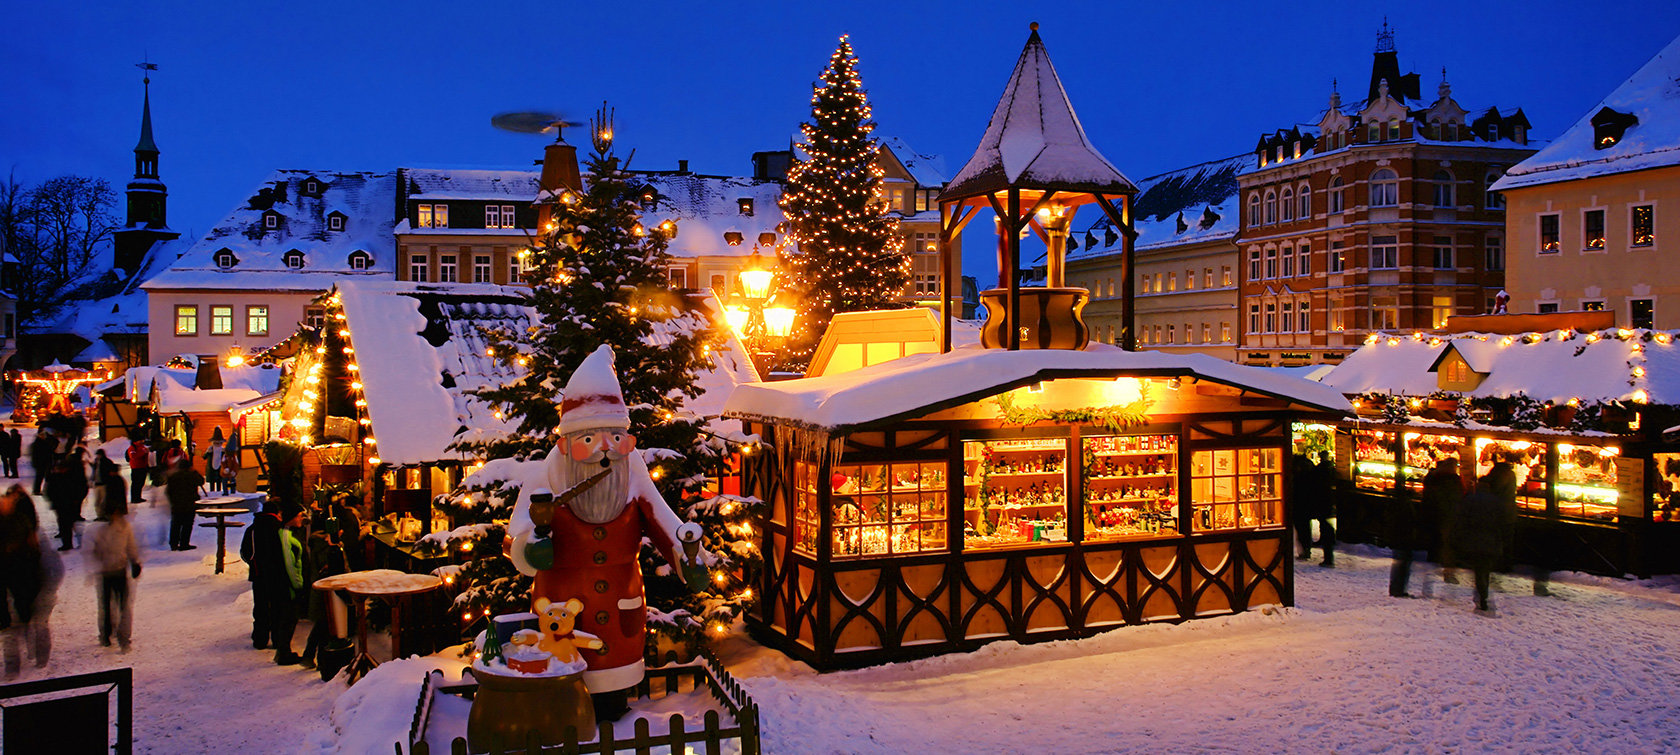 Σου δίνουμε το Χριστουγεννιάτικο δέντρο, βρίσκεις την Ευρωπαϊκή πόλη;